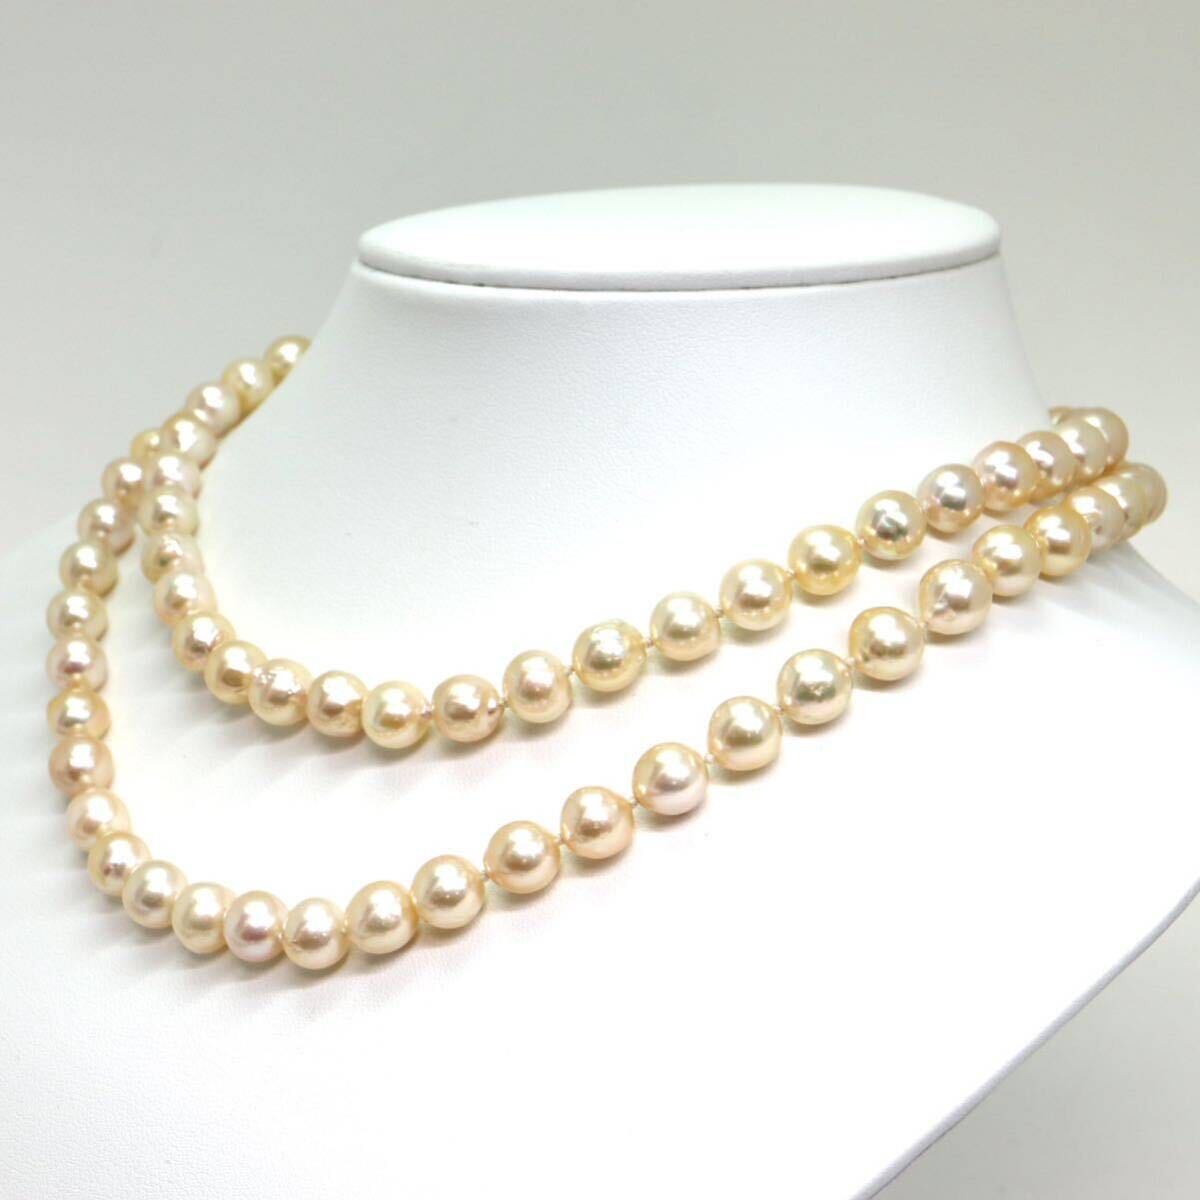 《アコヤ本真珠ロングネックレス》M 71.9g 約8.0-8.5mm珠 約84cm pearl necklace ジュエリー jewelry DC0/DE0の画像4